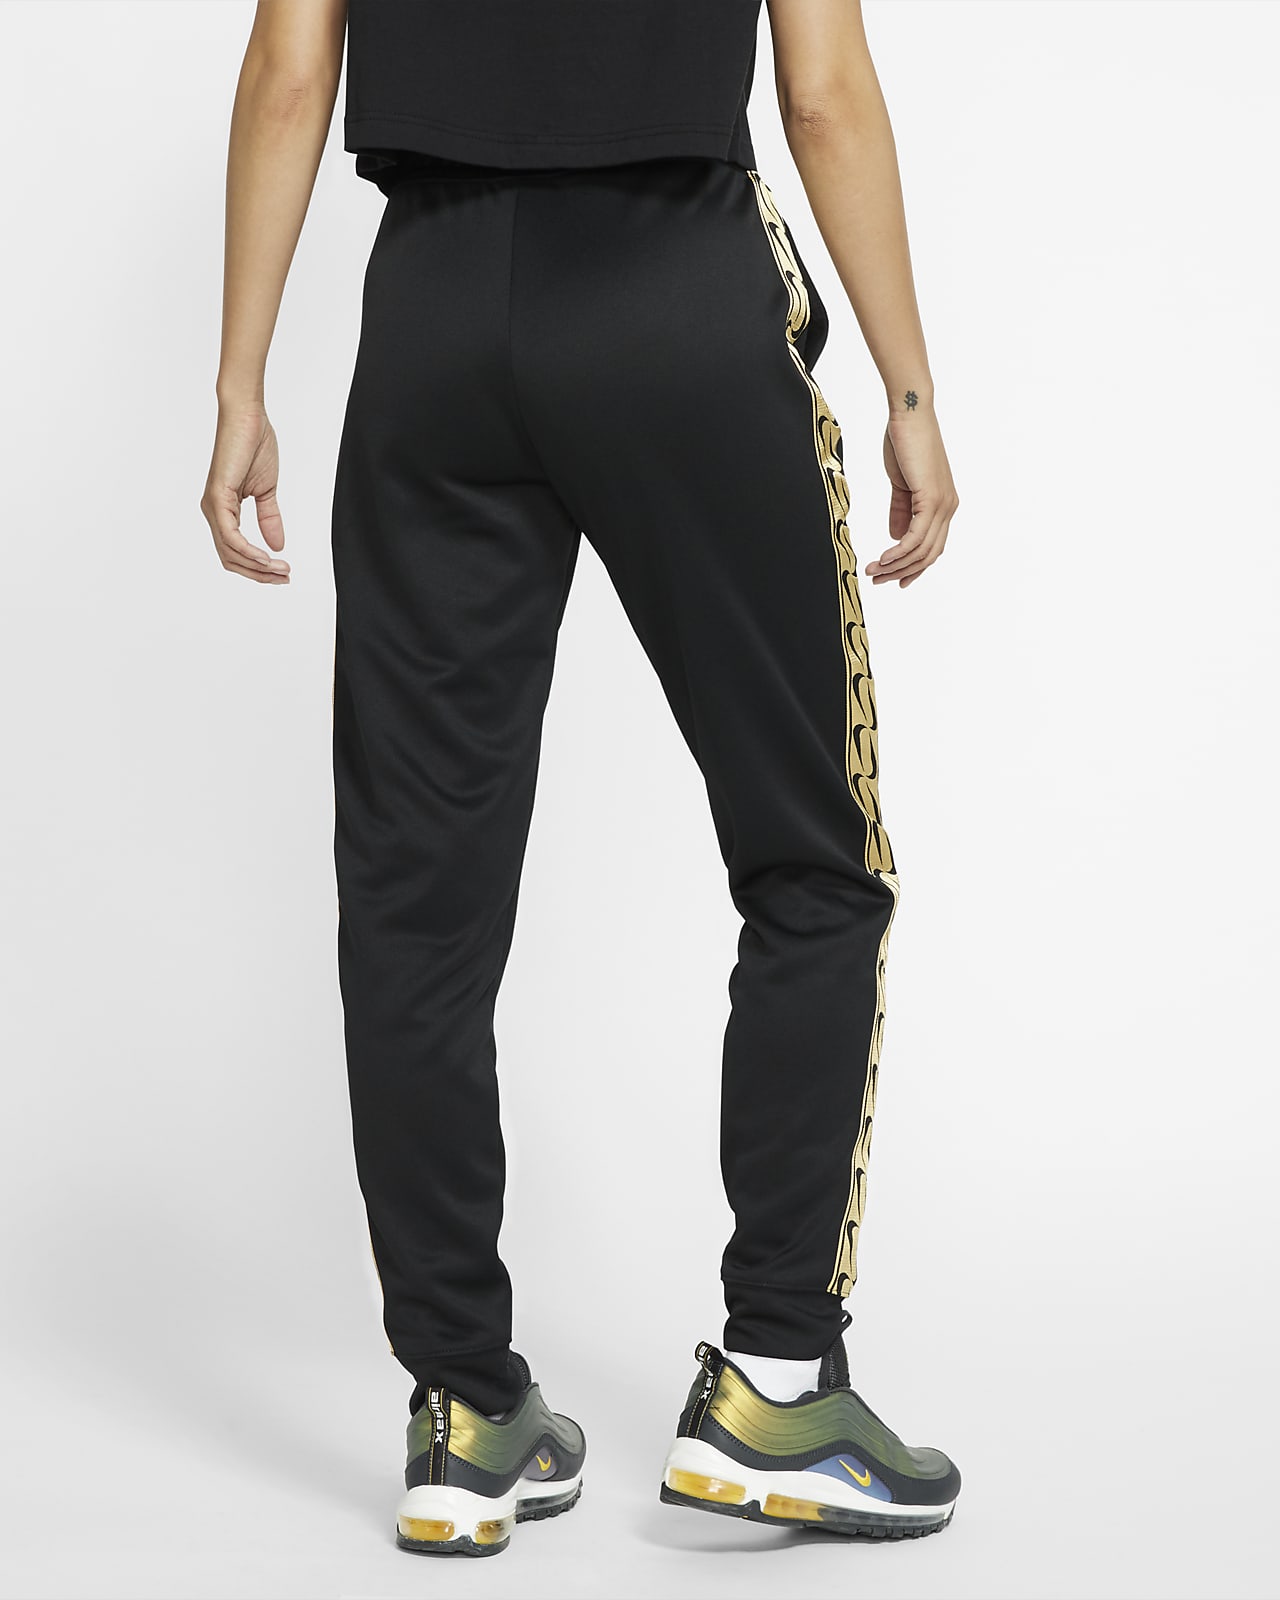 Pantalon de jogging avec logo Nike Sportswear pour Femme. Nike FR